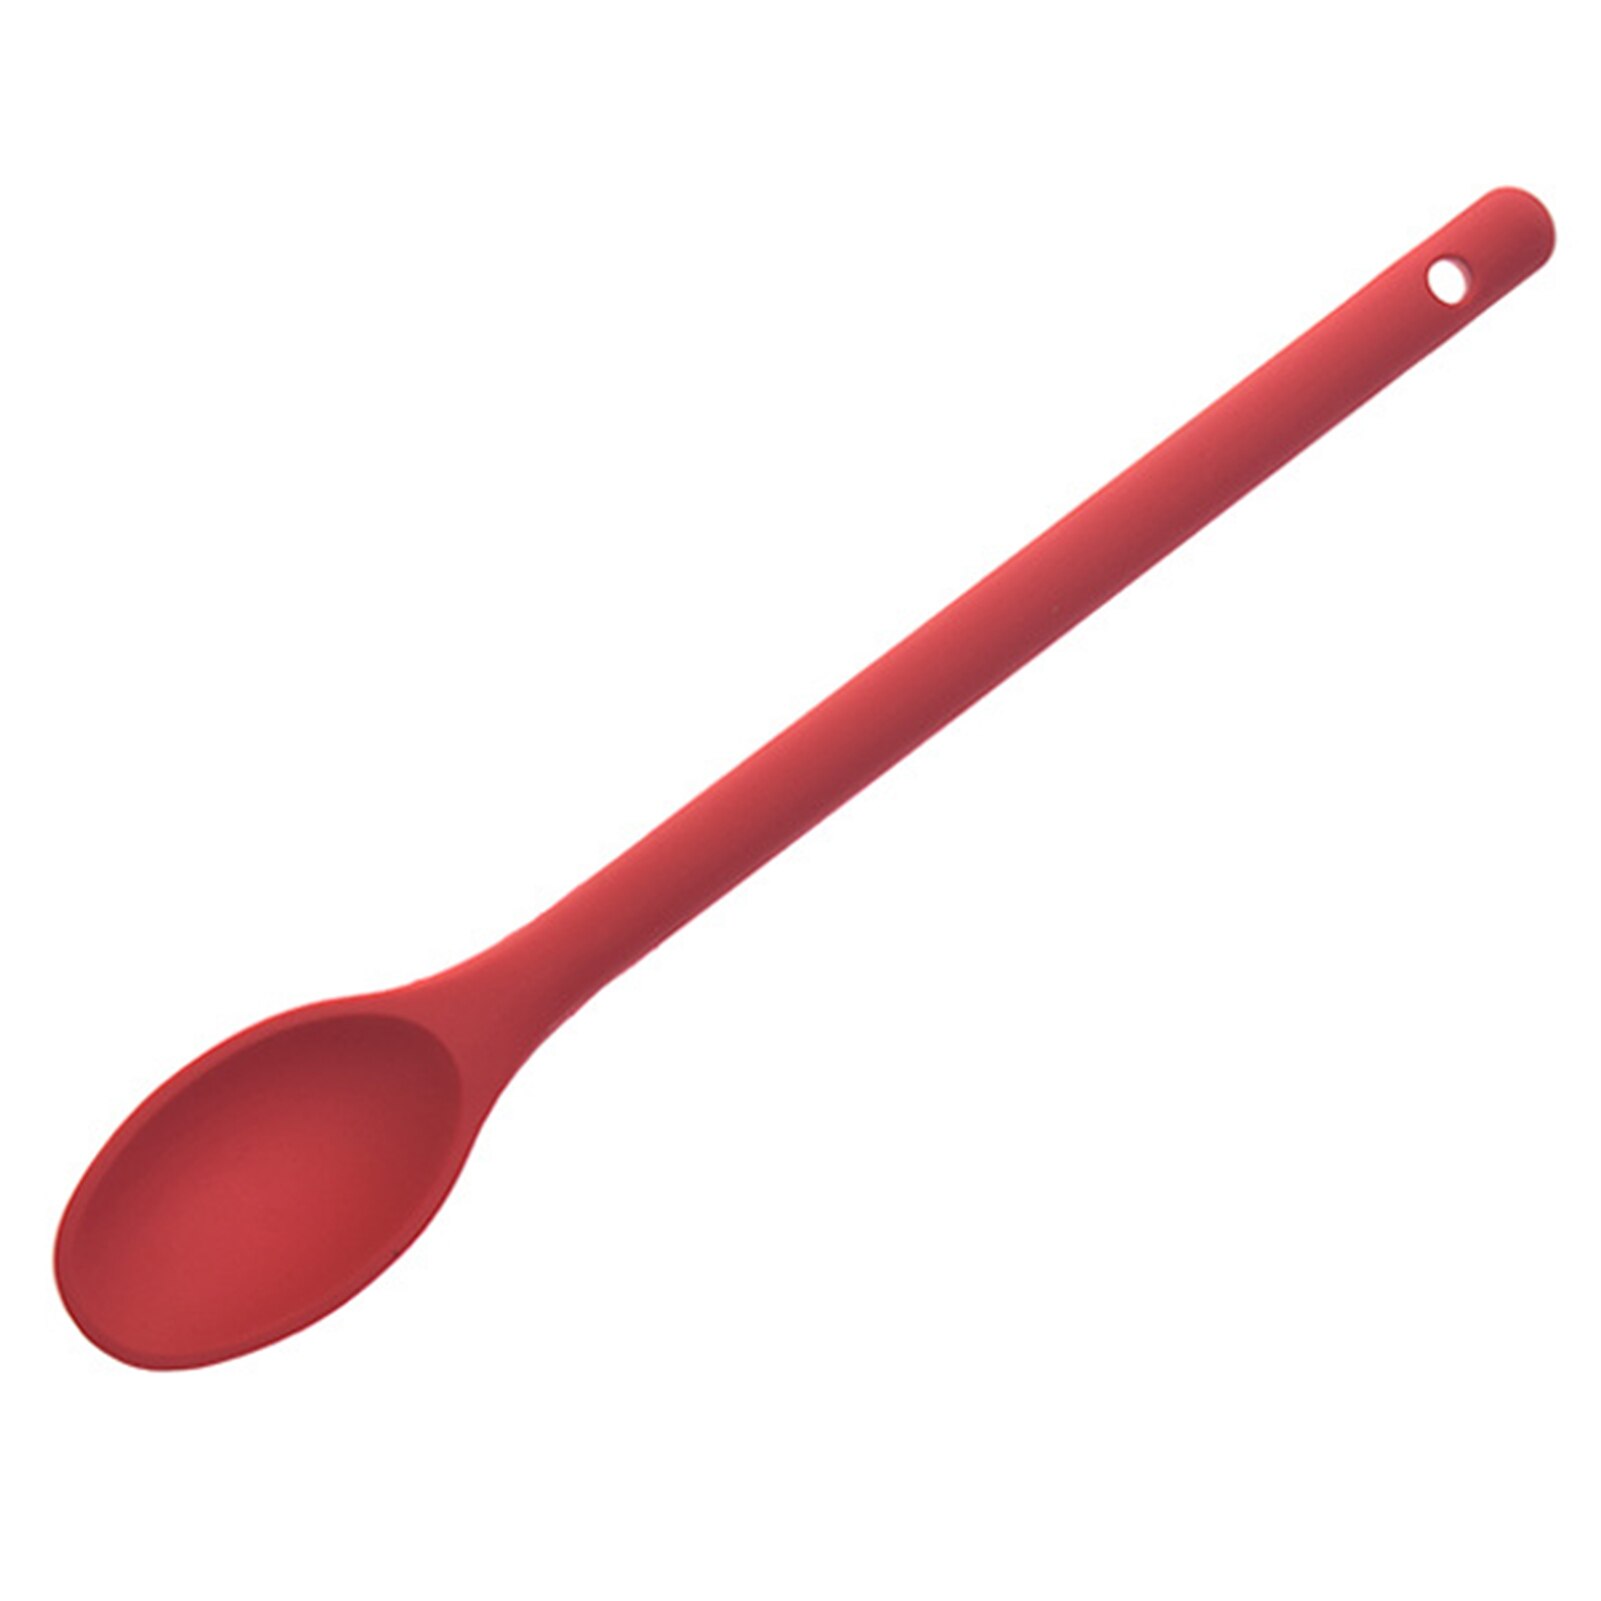 Bedste silikone køkkenredskaber sæt træhåndtag spatel suppe ske pensle pasta pasta dørslag non-stick køkkengrej køkkenredskab: Rød